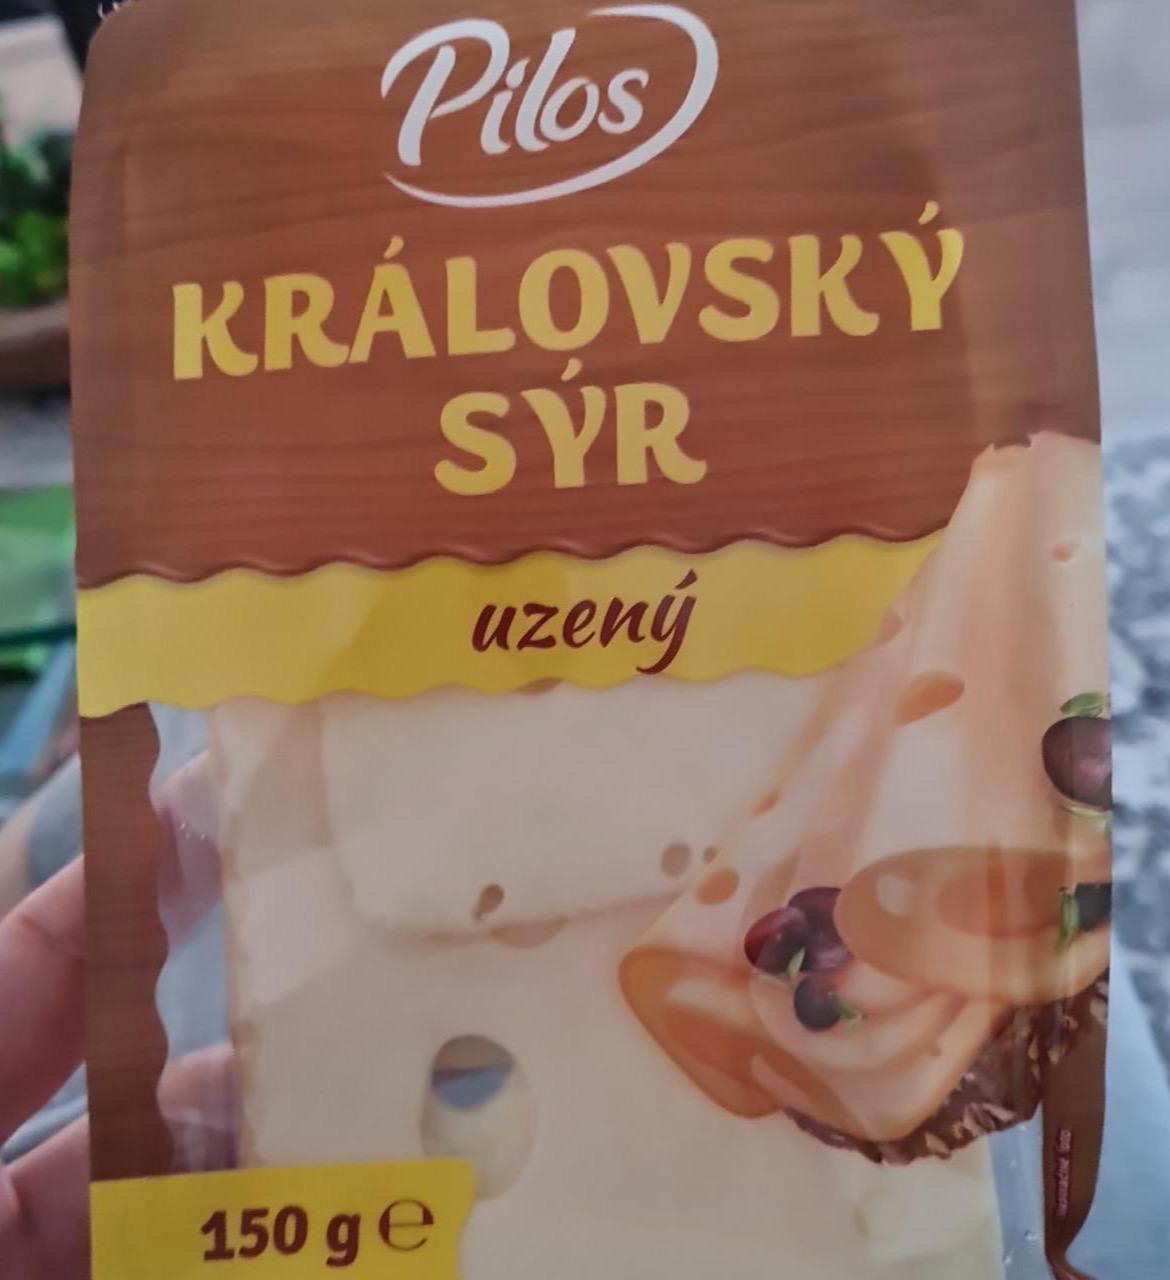 Képek - Královský sýr uzený Pilos